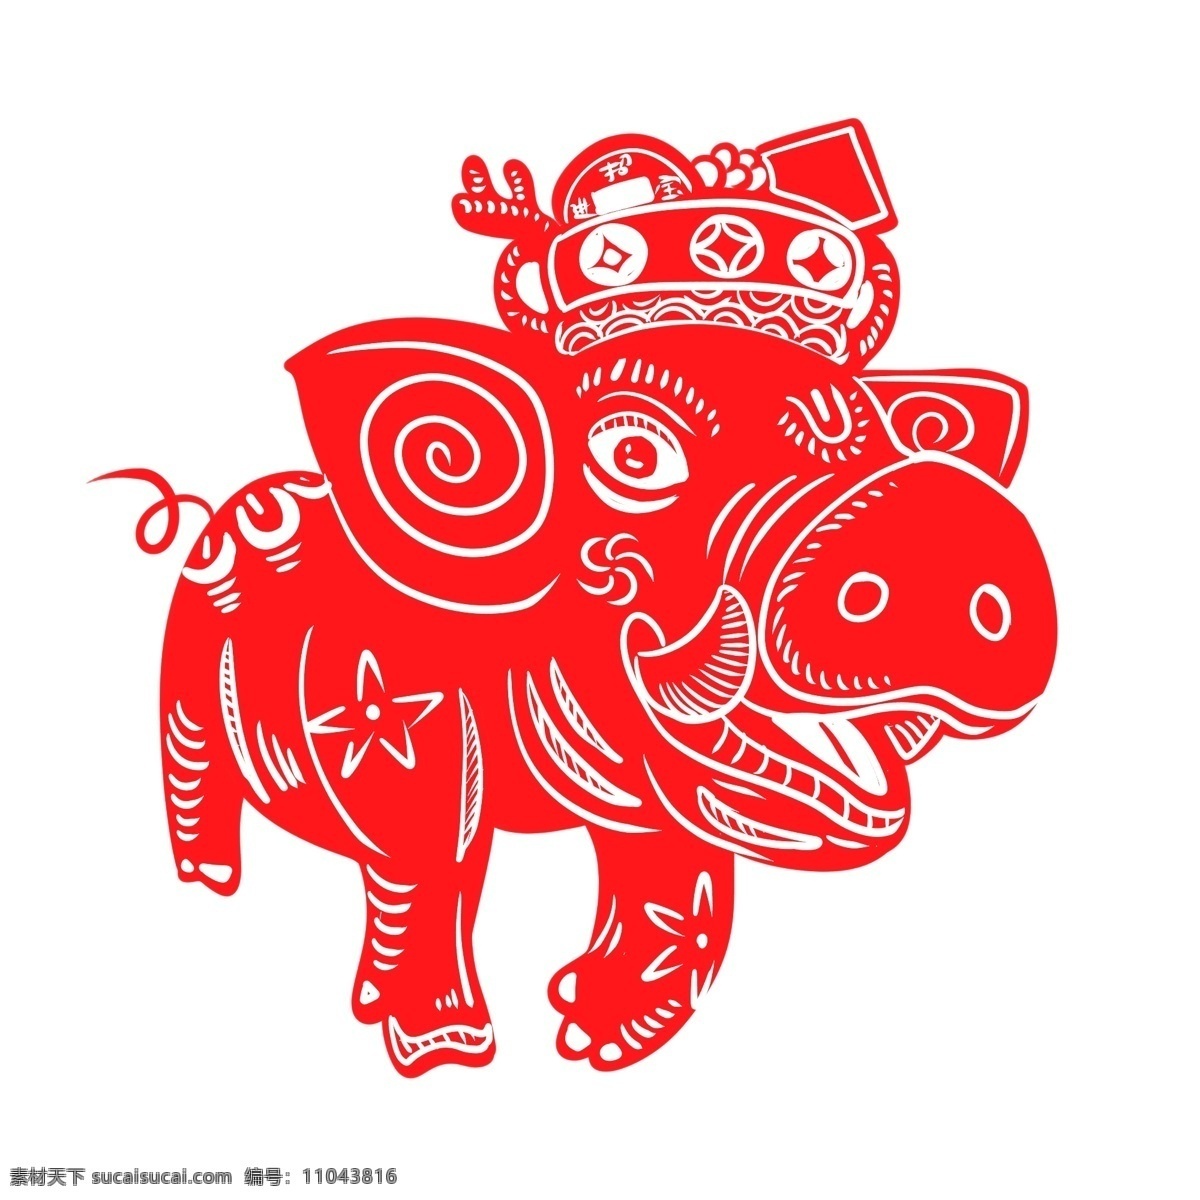 2019 春节 猪年 剪纸 生肖 猪 红色 喜庆 原创 商用 中国风 传统节日 传统习俗 贴窗花